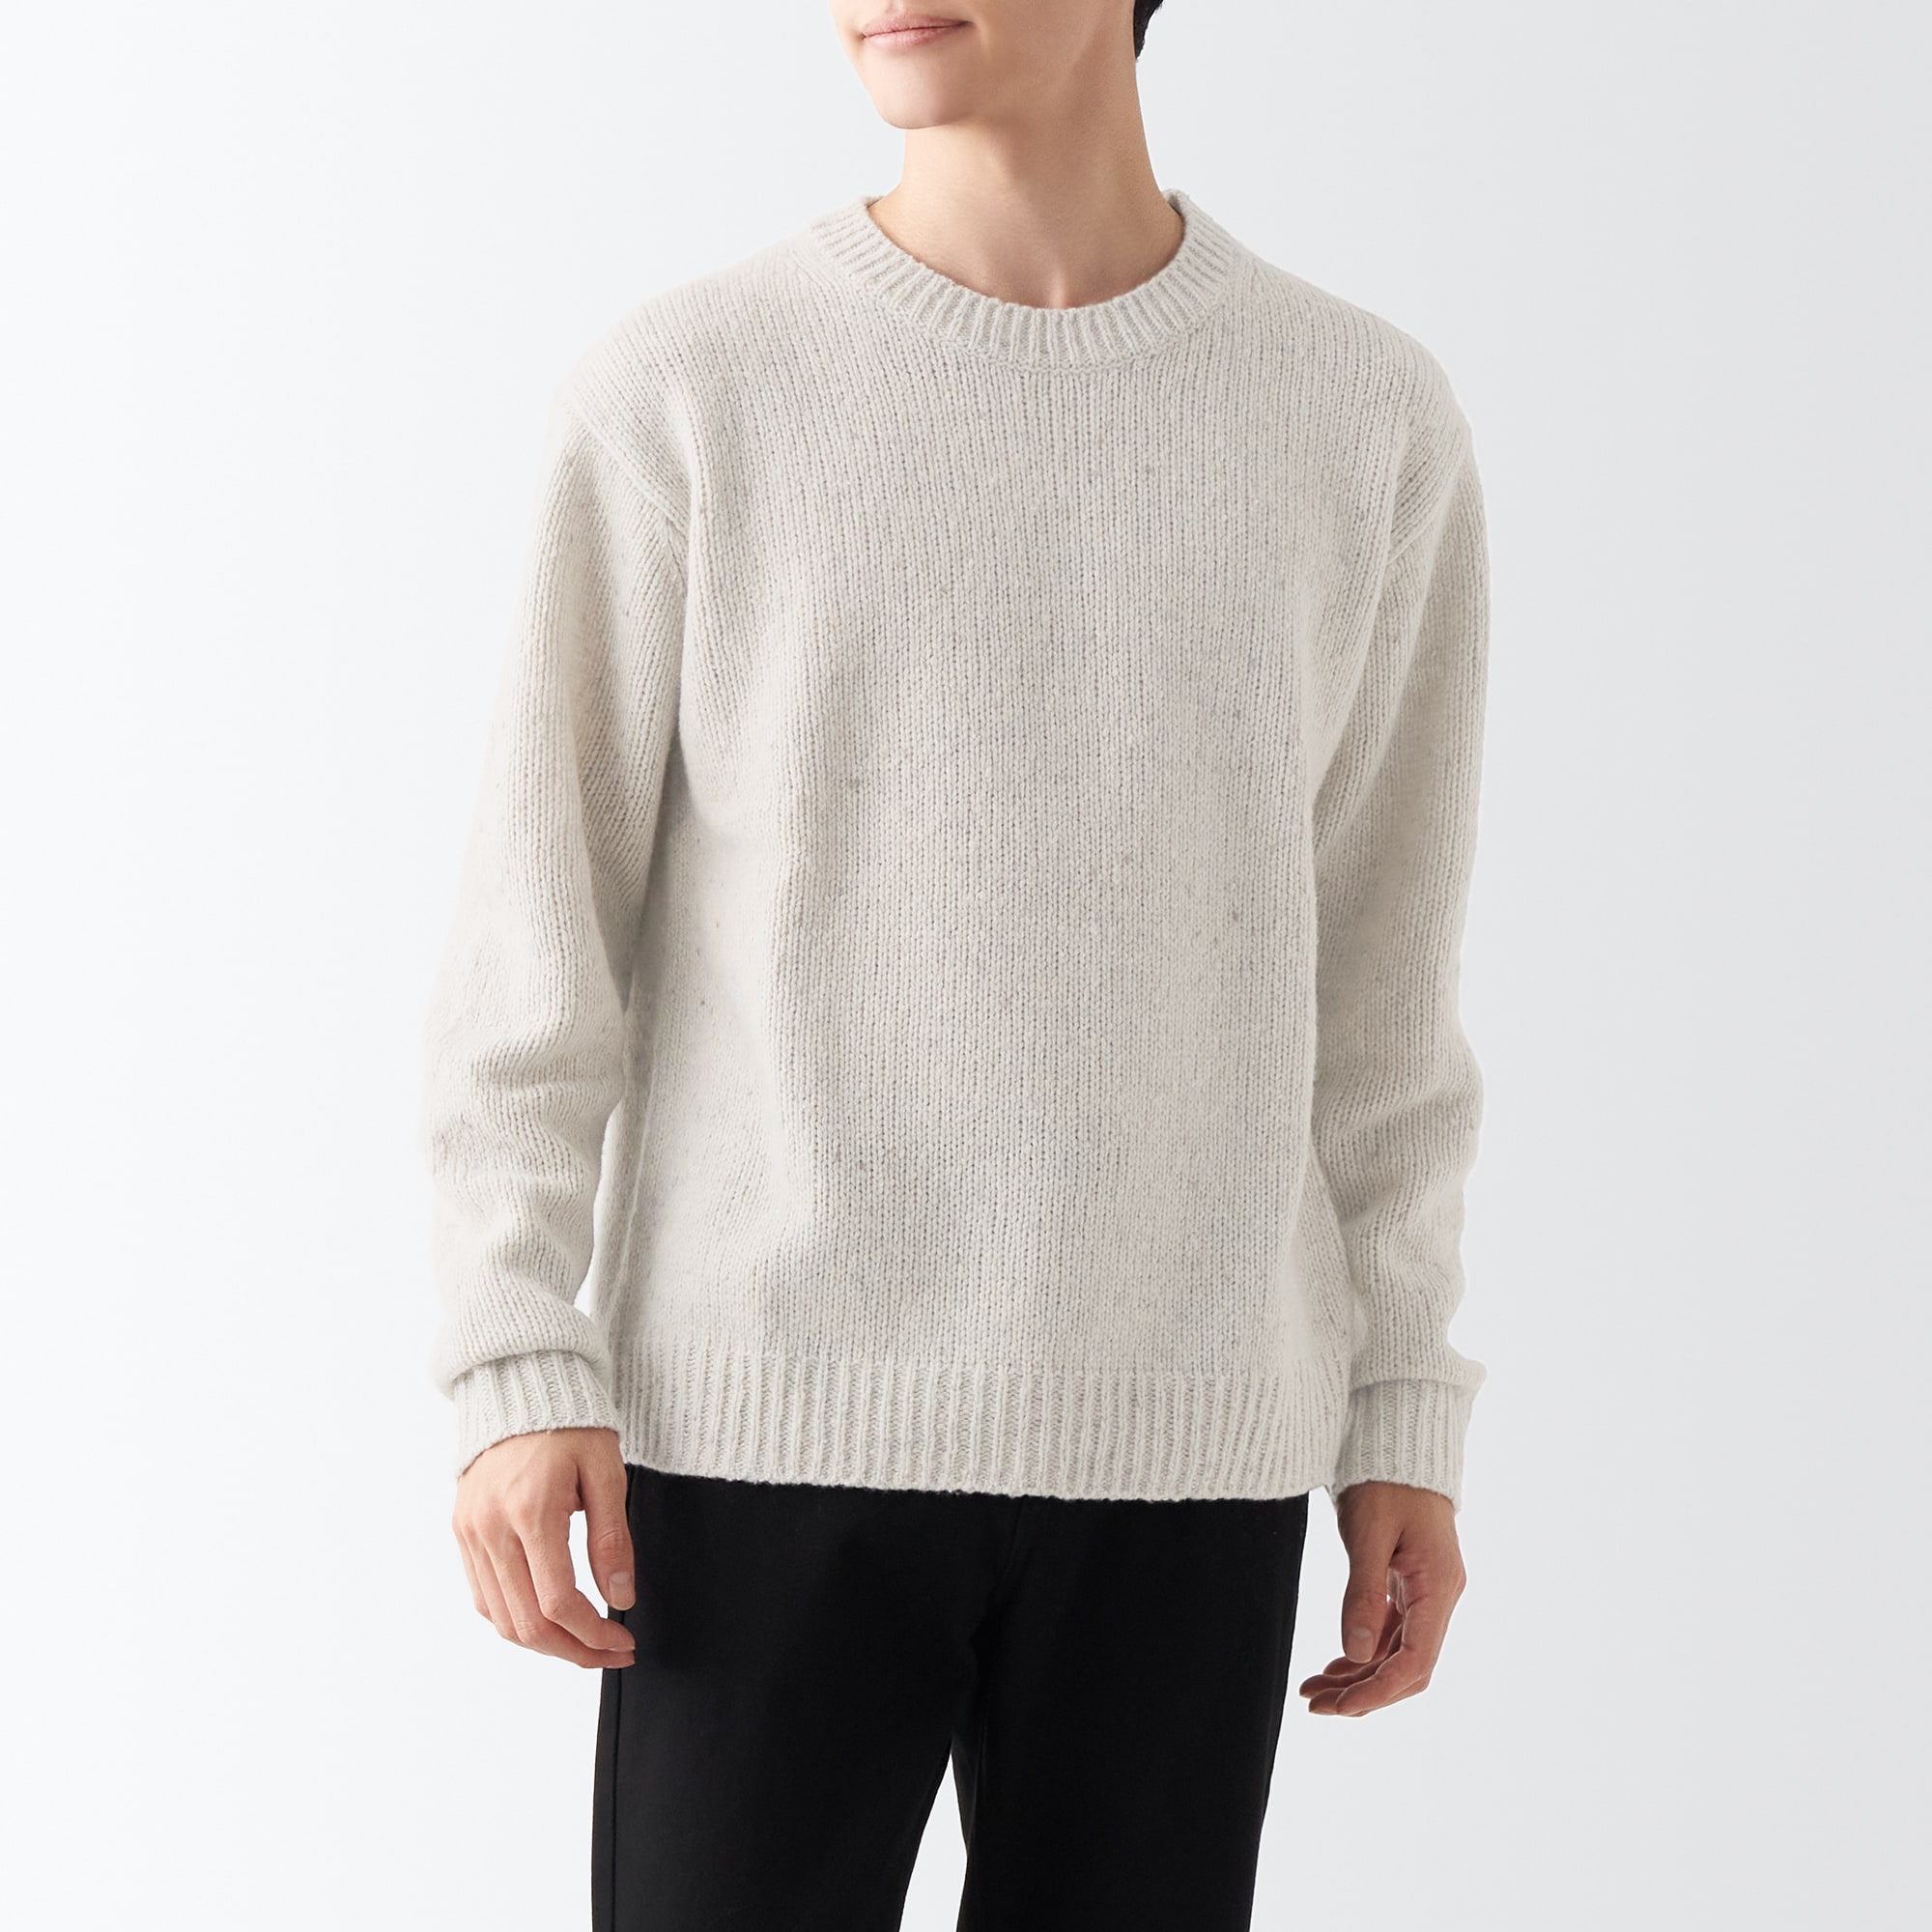 무인양품 일본 울혼방 넵실 크루넥 스웨터